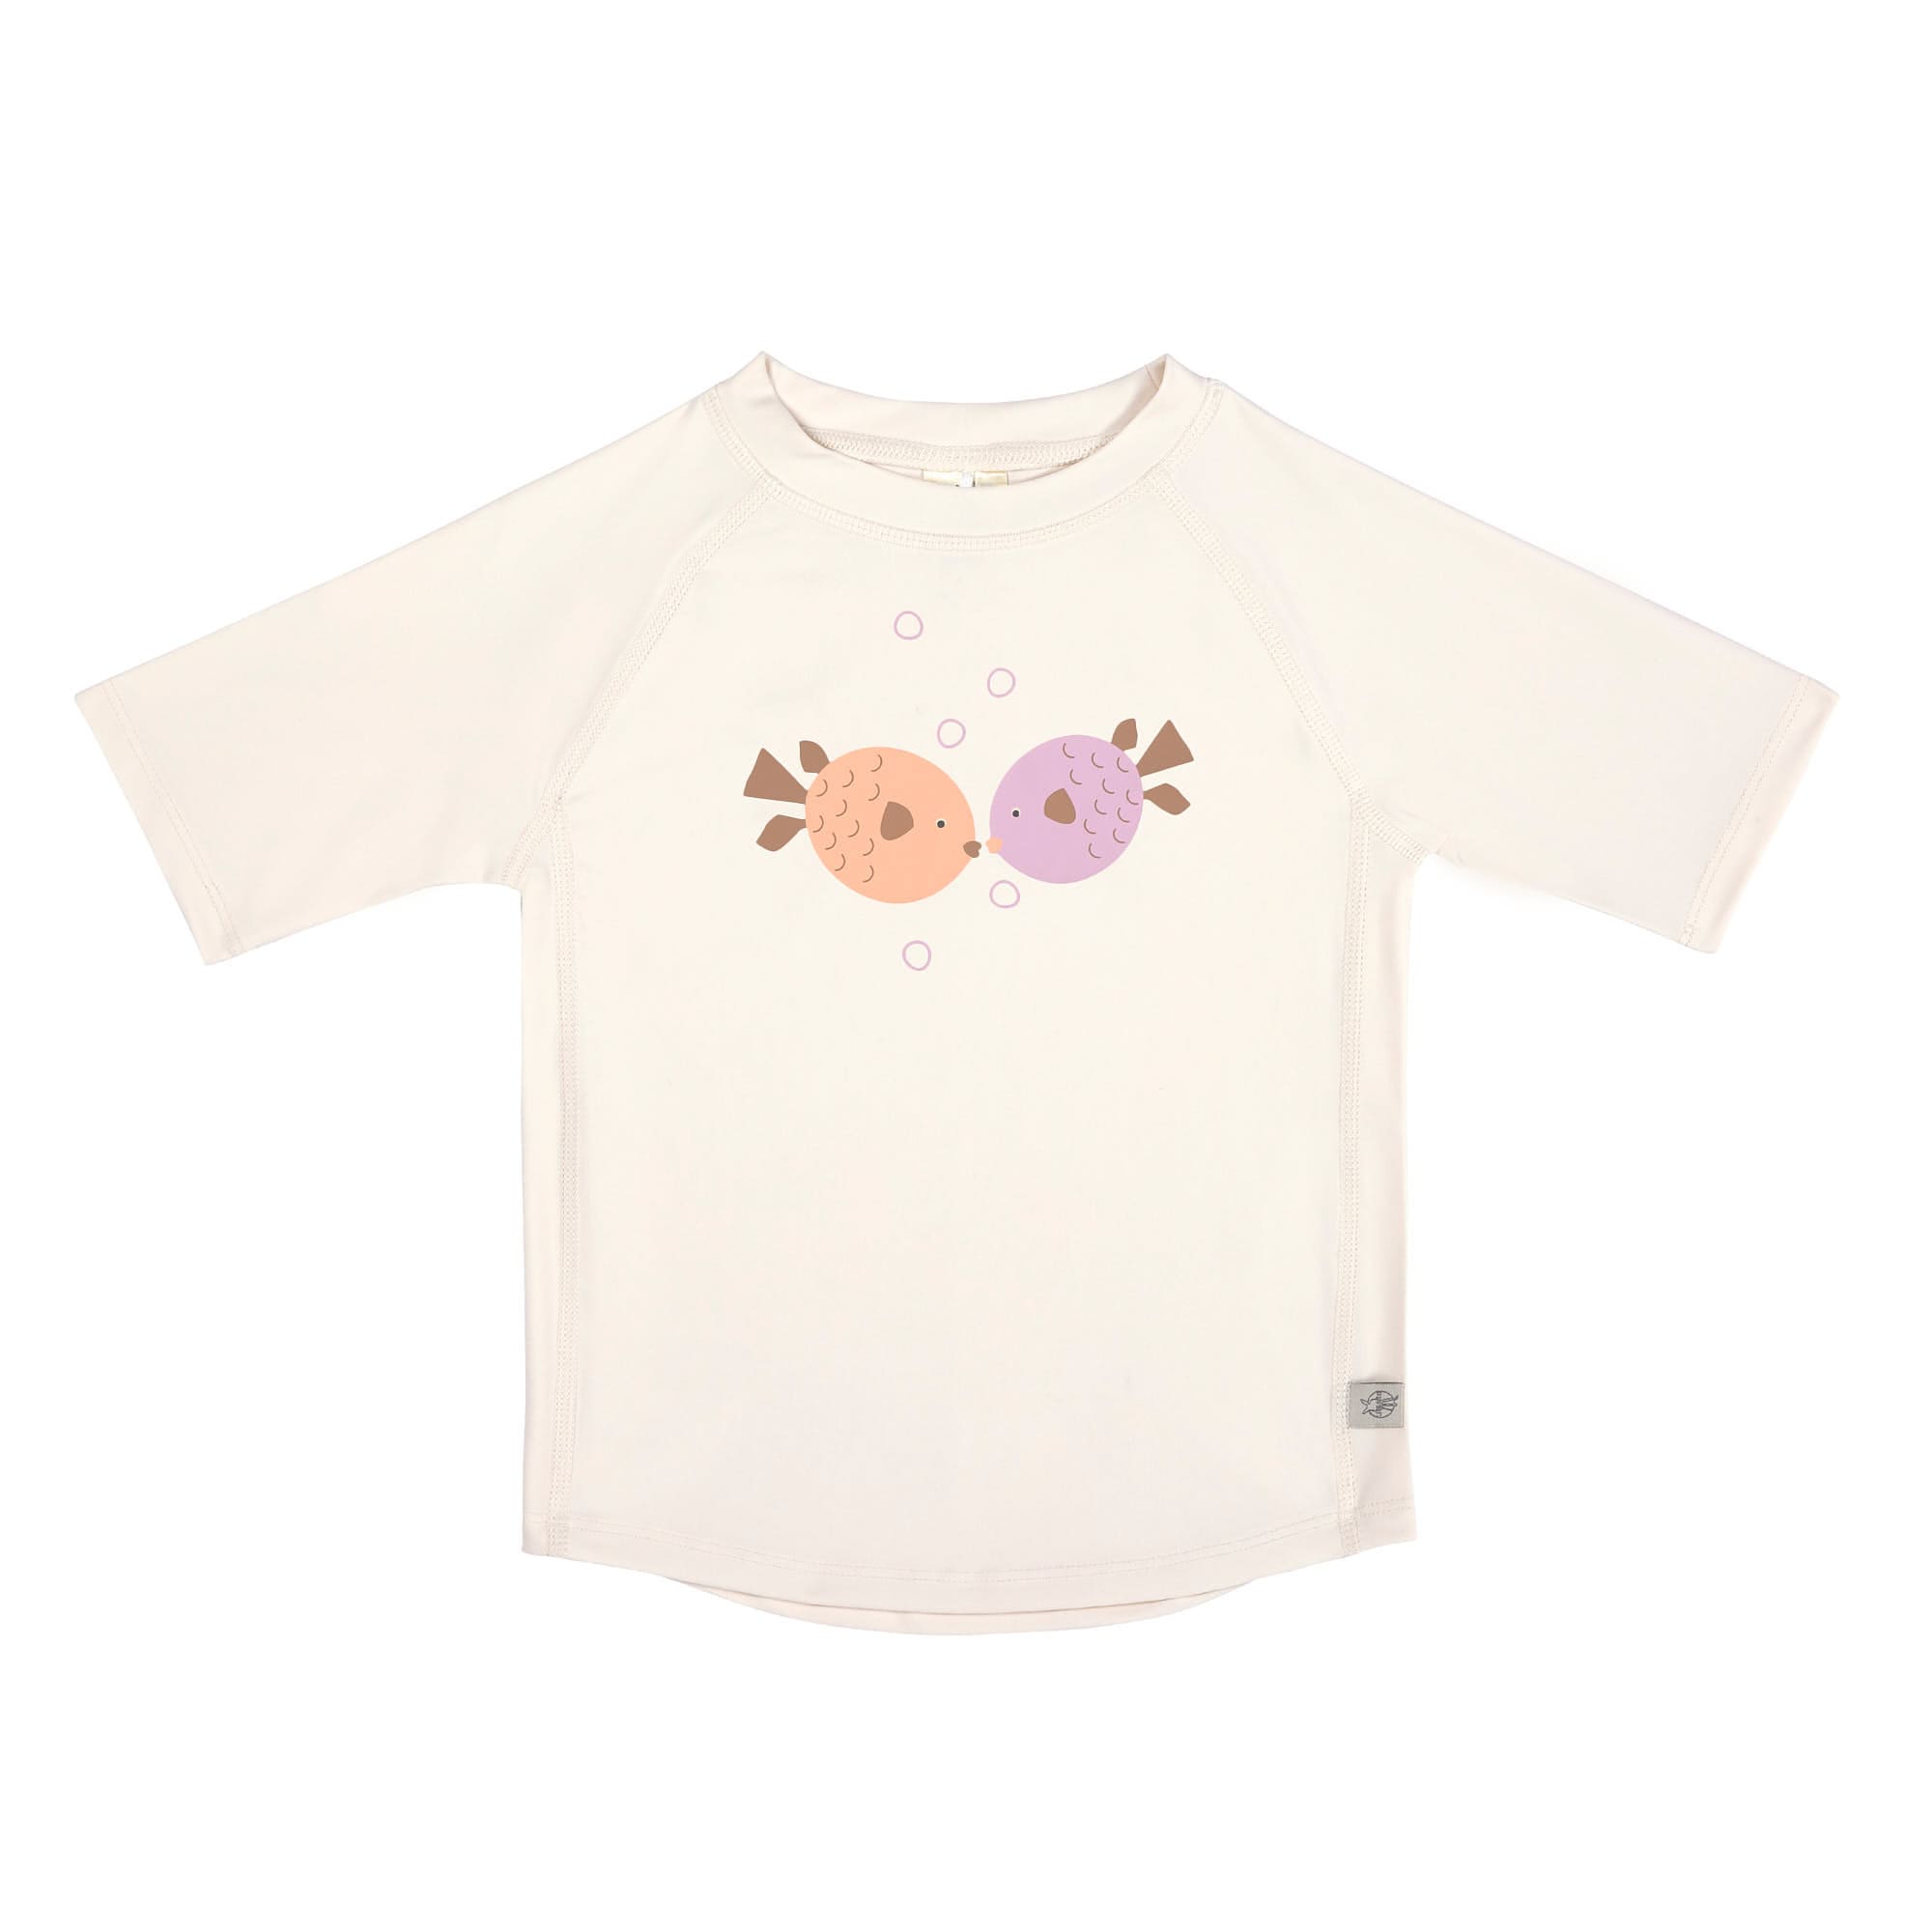 Badekleidung T-Shirt lila/offwhite/orange 62/68 Lässig Fische